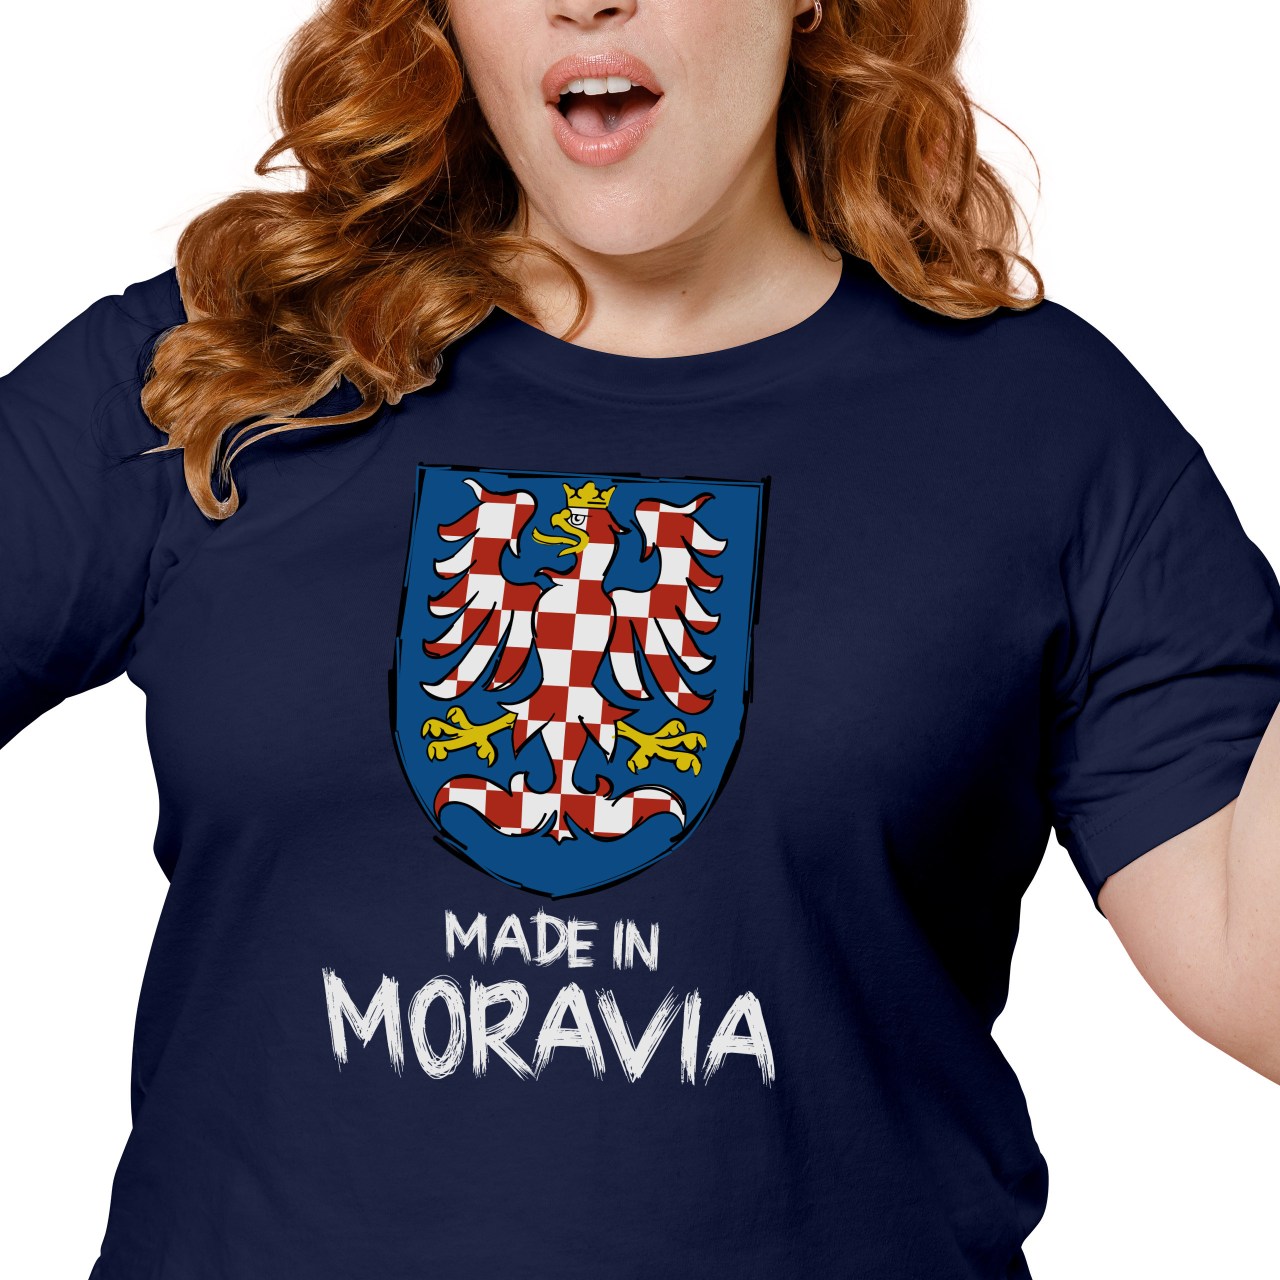 Sportsman Attentive Unparalleled Dámské tričko s potiskem “Made in Moravia” | Manboxeo.cz